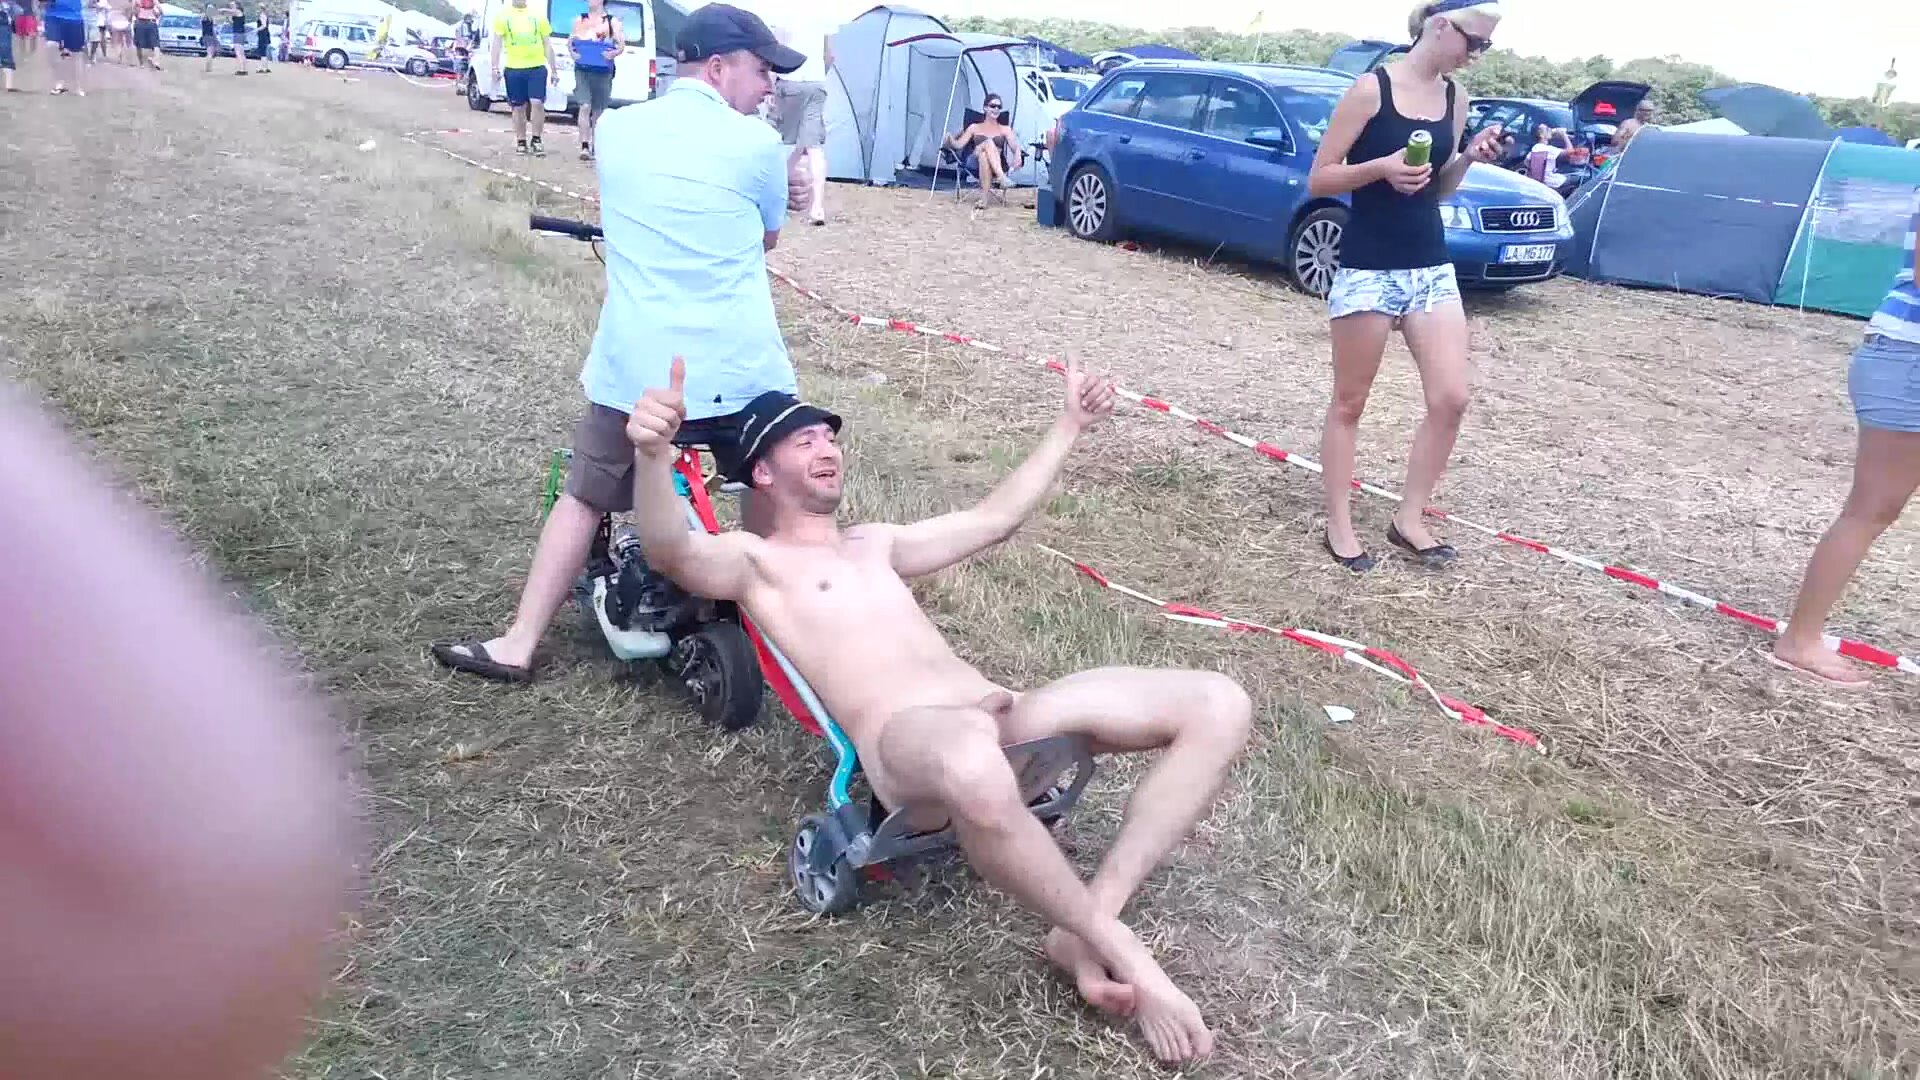 Naked at festival